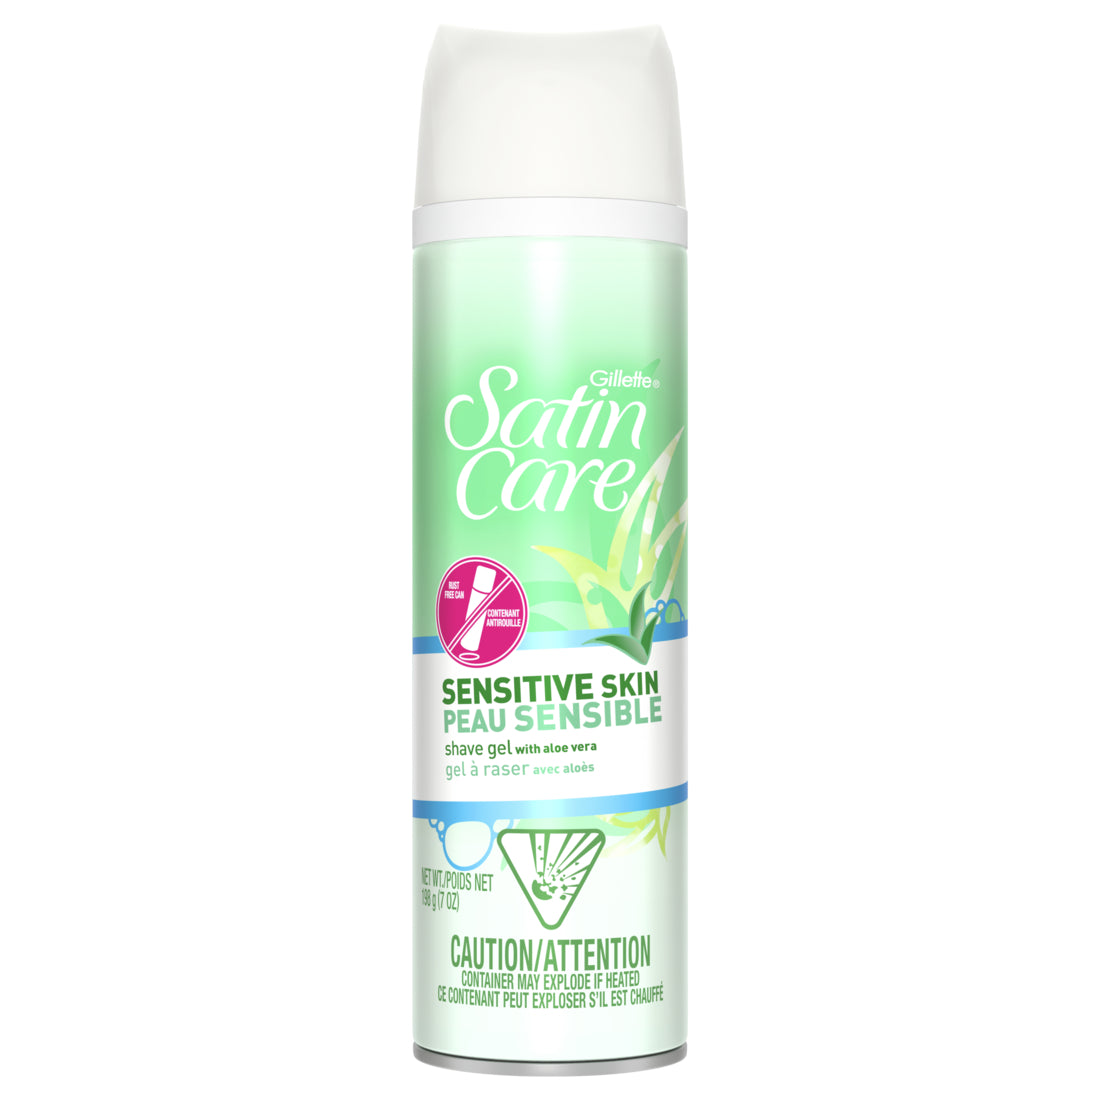 Gillette Satin Care Sensitive Skin Shave Gel for Women - 7oz/12pk